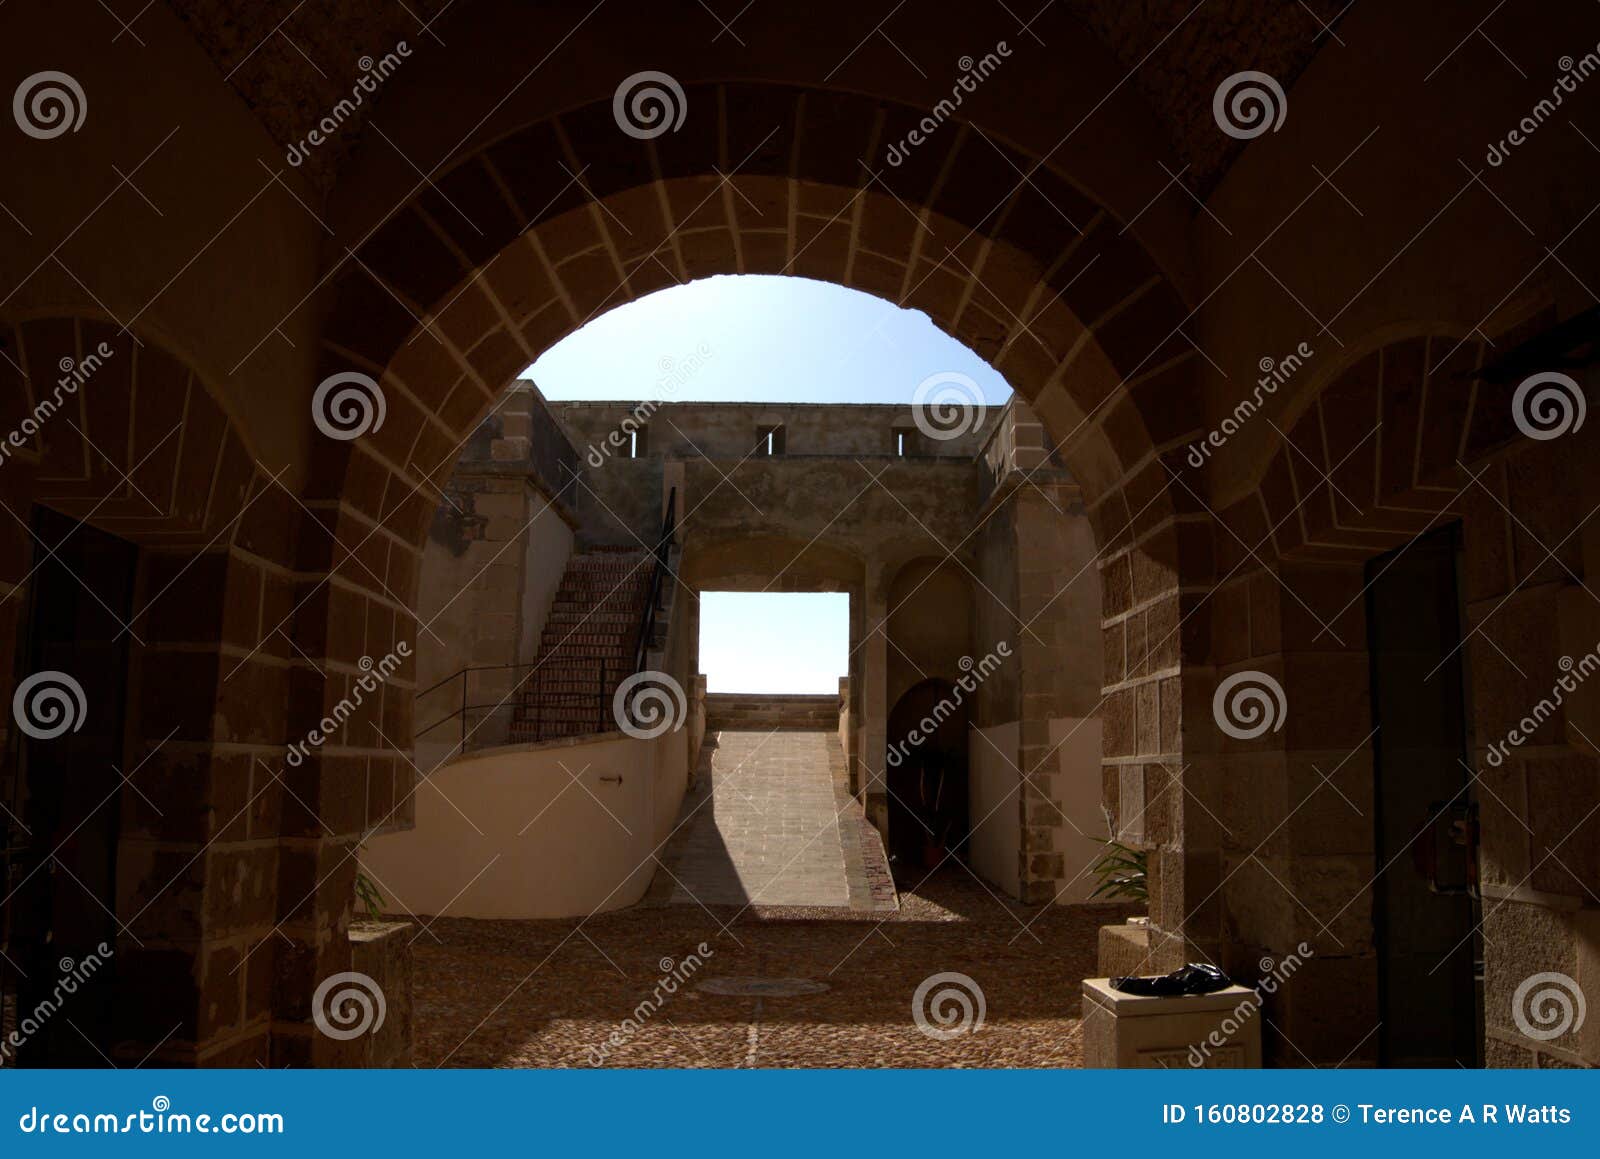 the entrance archway at castillo de guardias viejas.